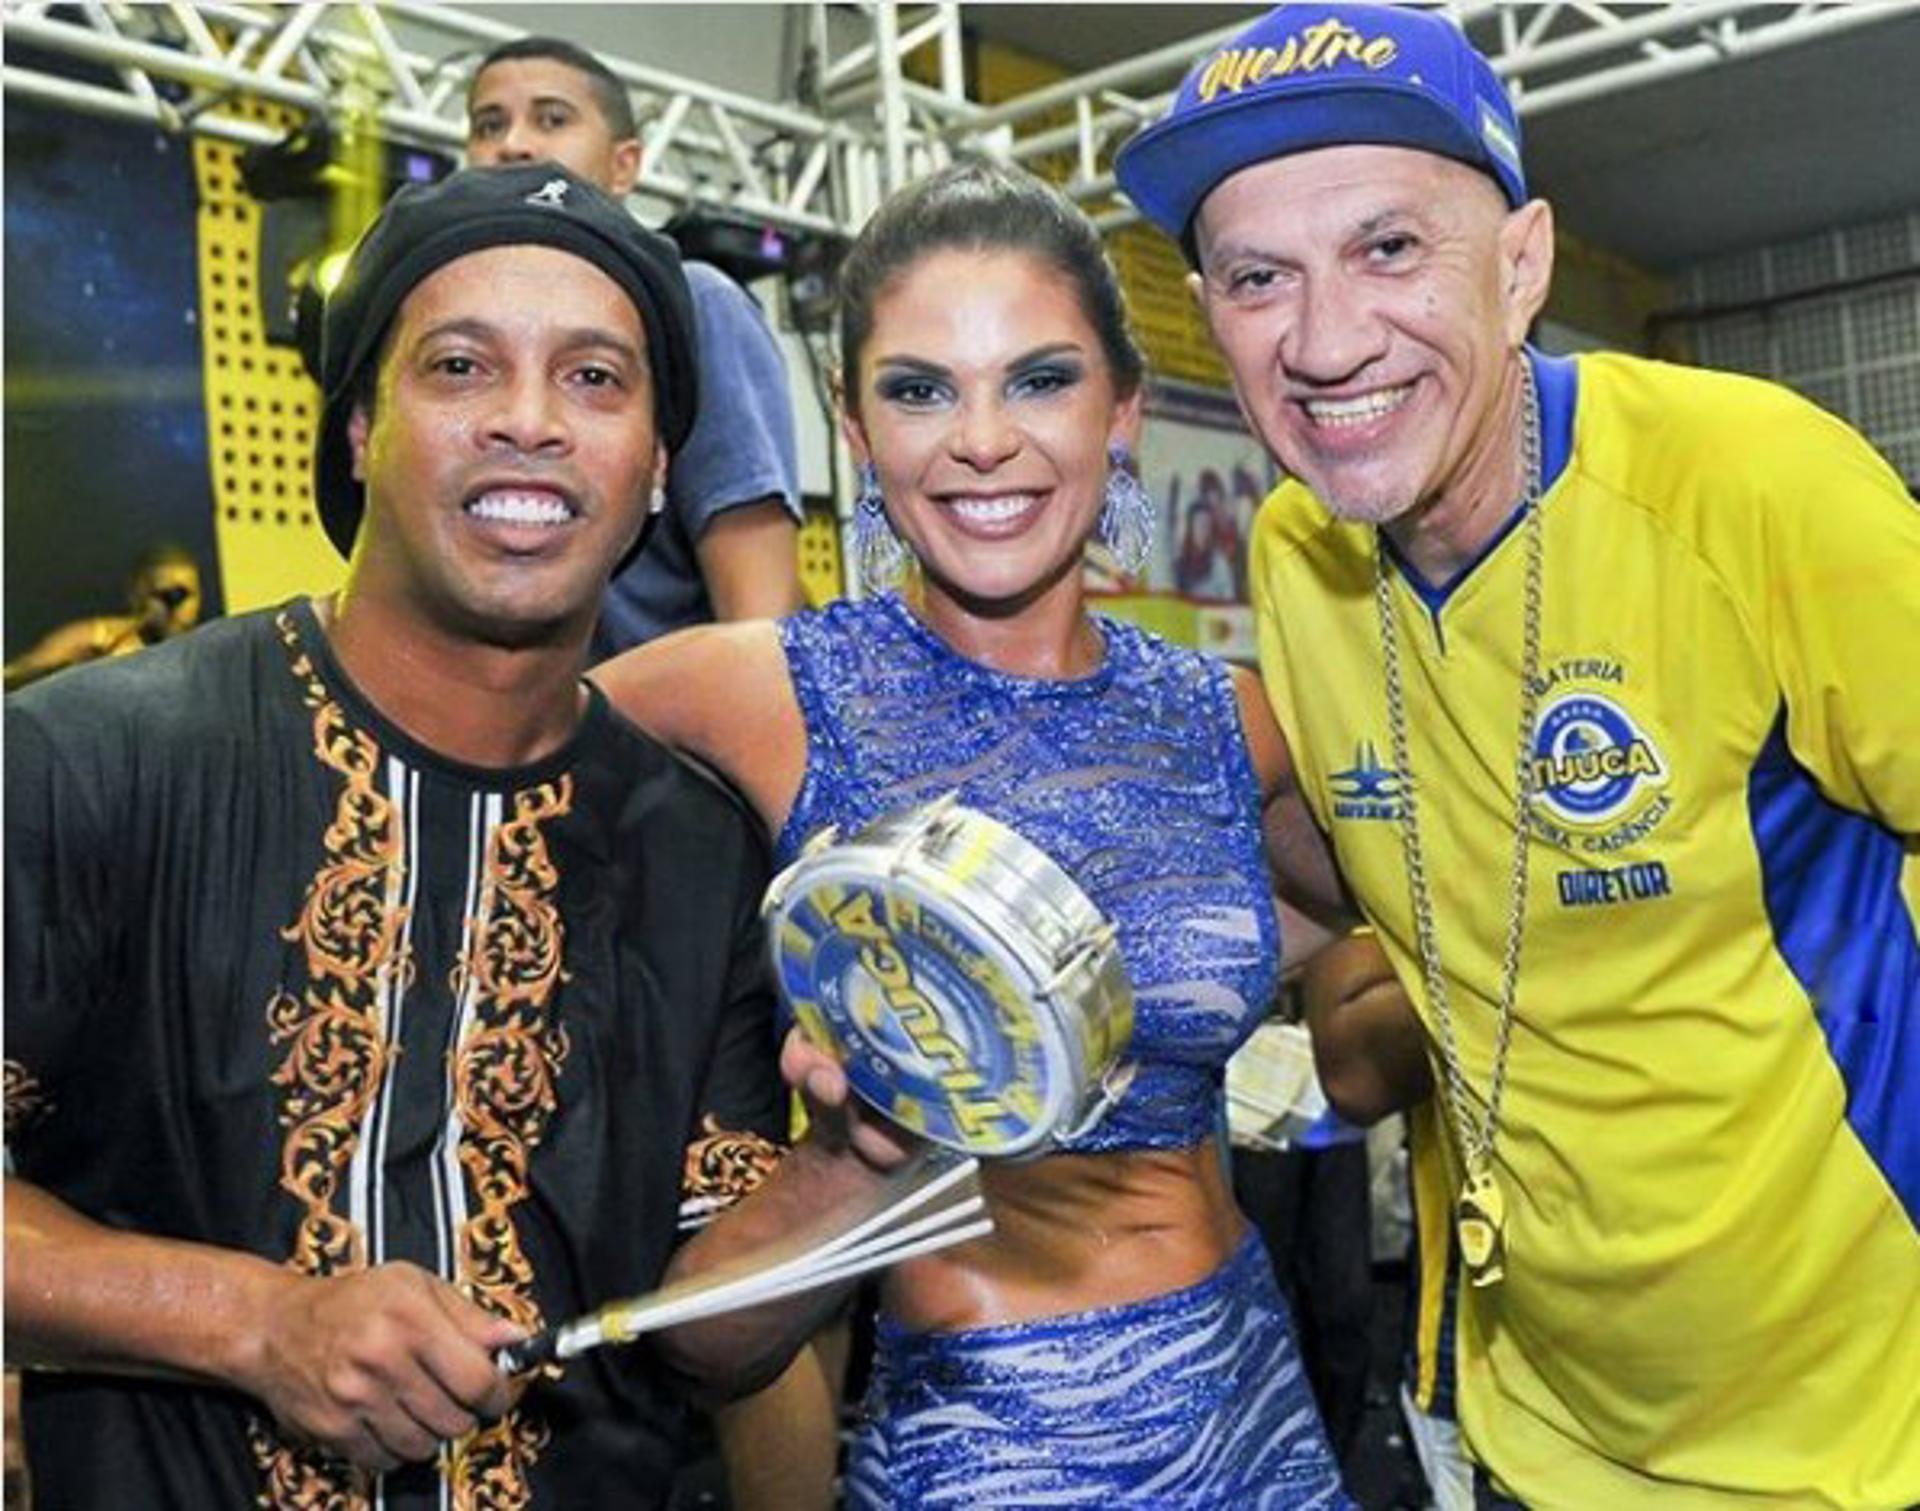 Camarote Ronaldinho Gaúcho